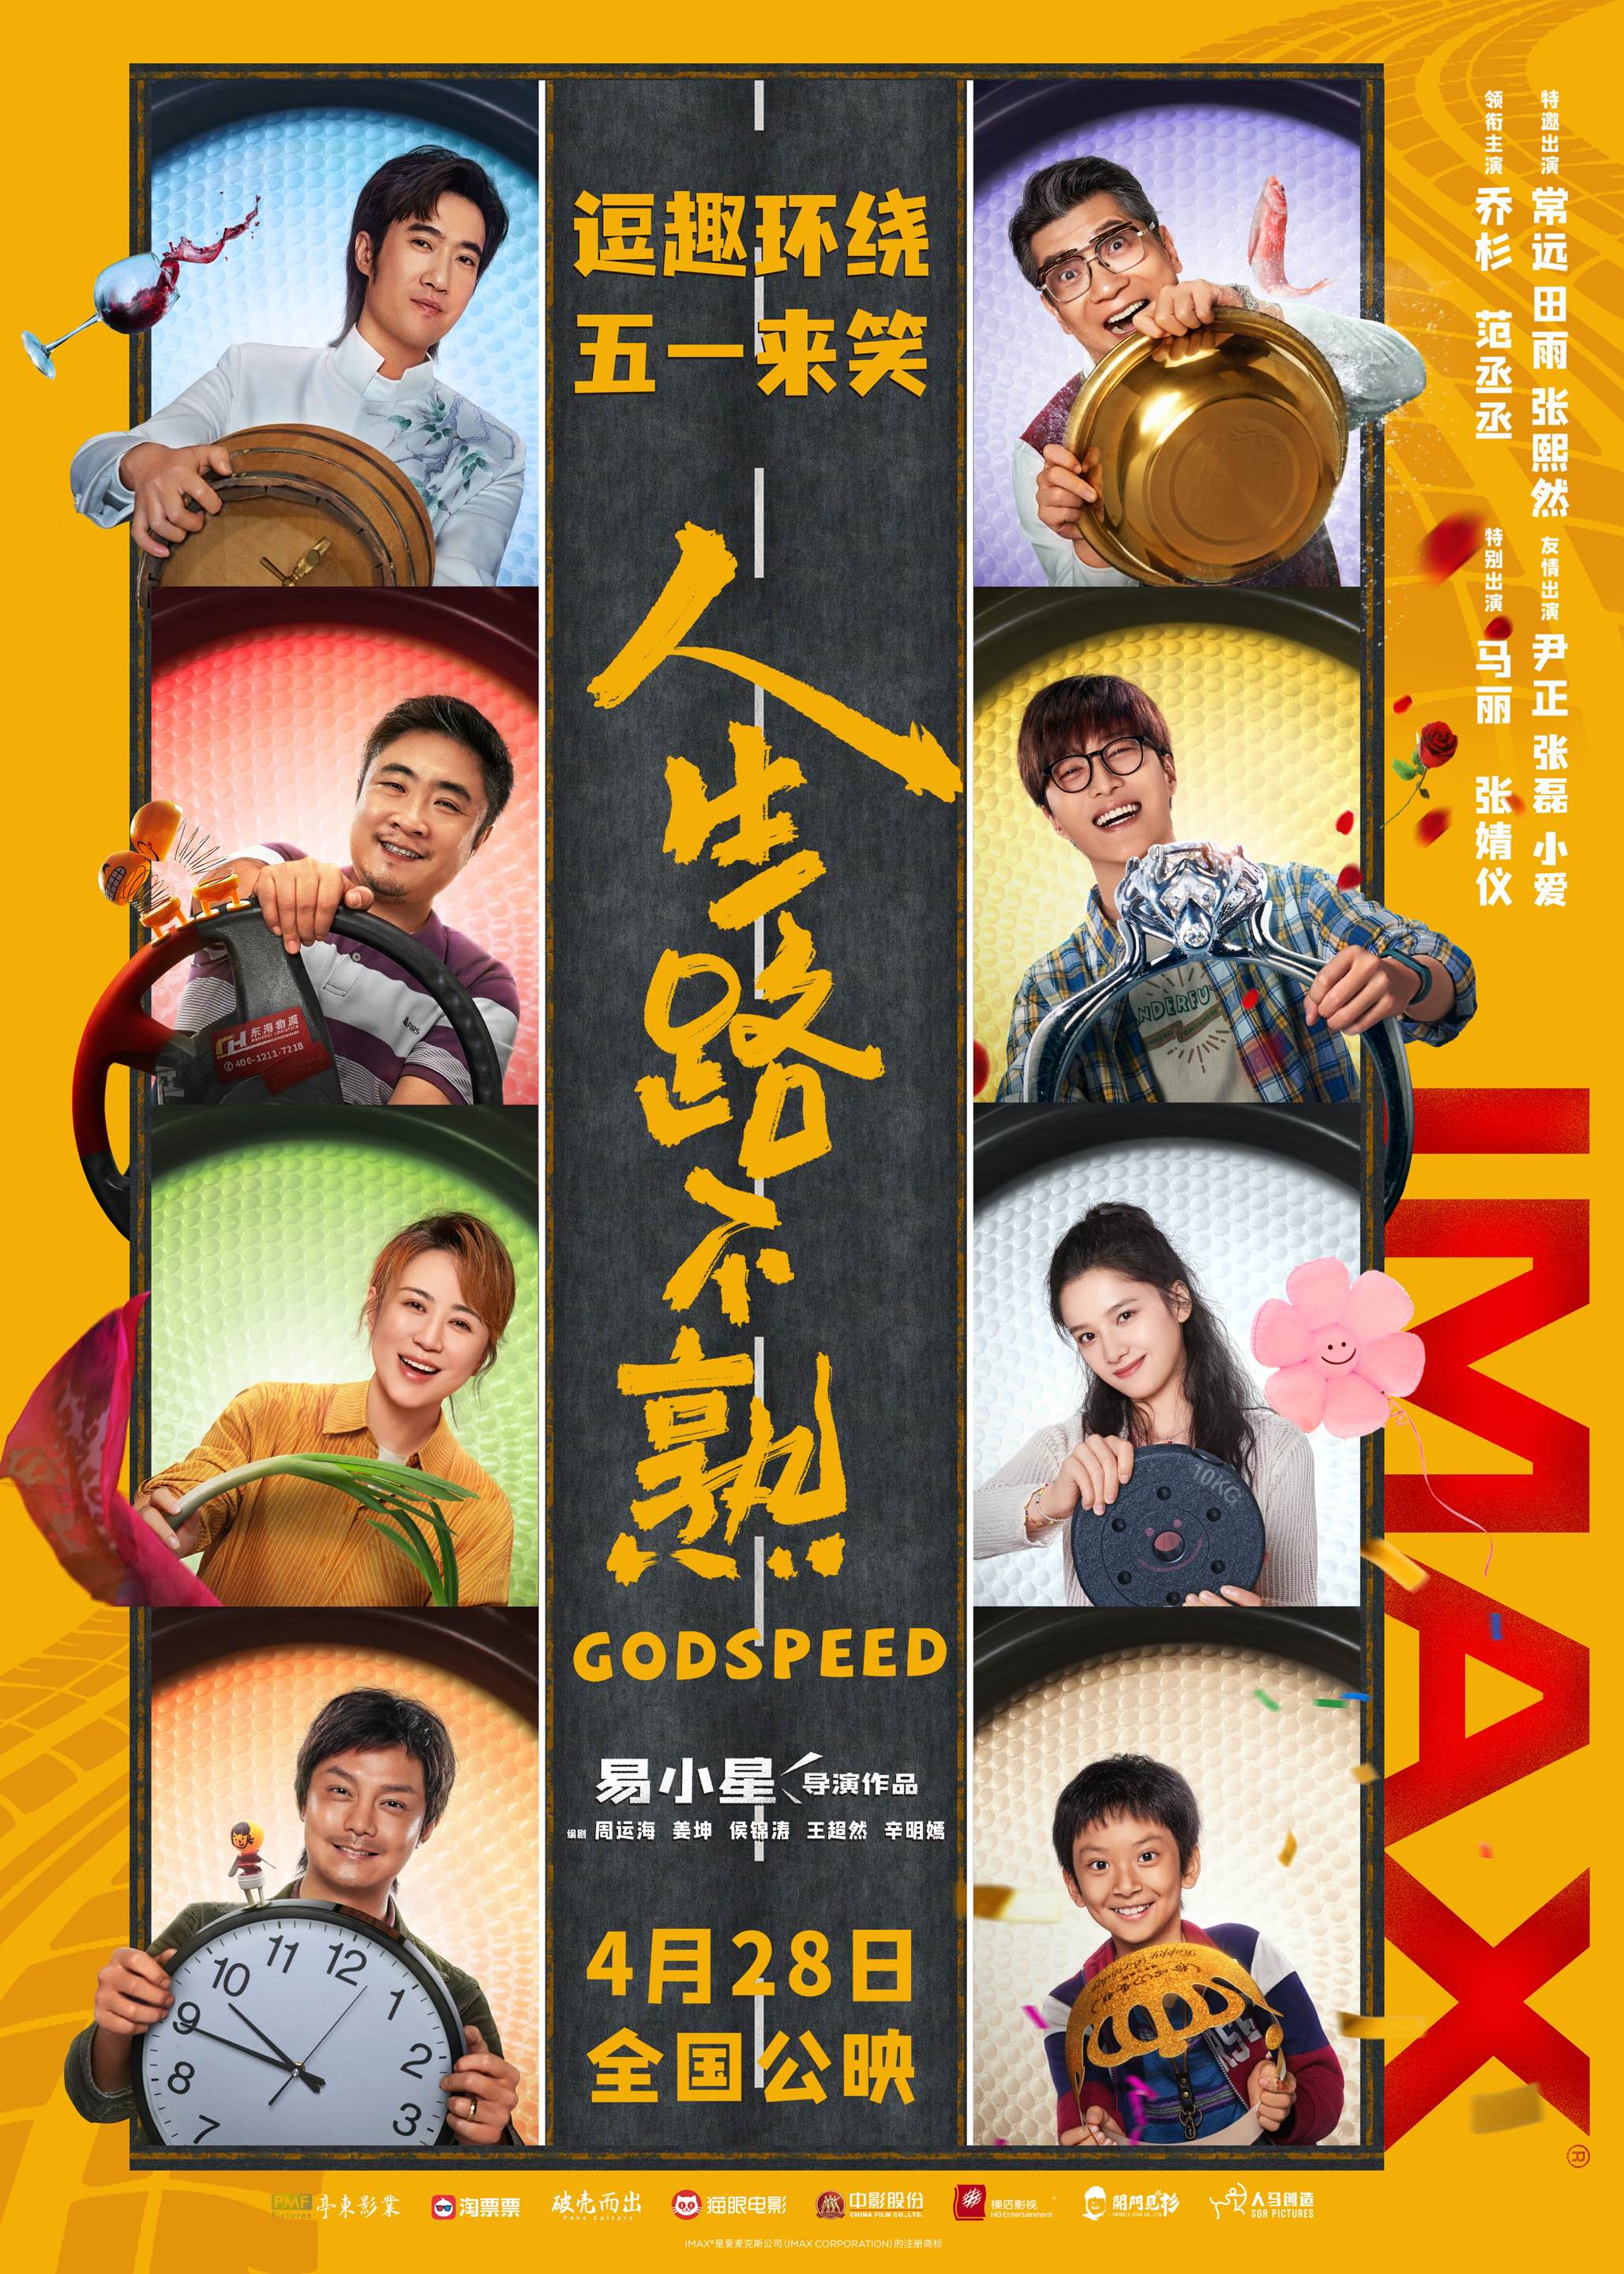 【影視動漫】易小星喜劇《人生路不熟》4月28日登陸IMAX影院